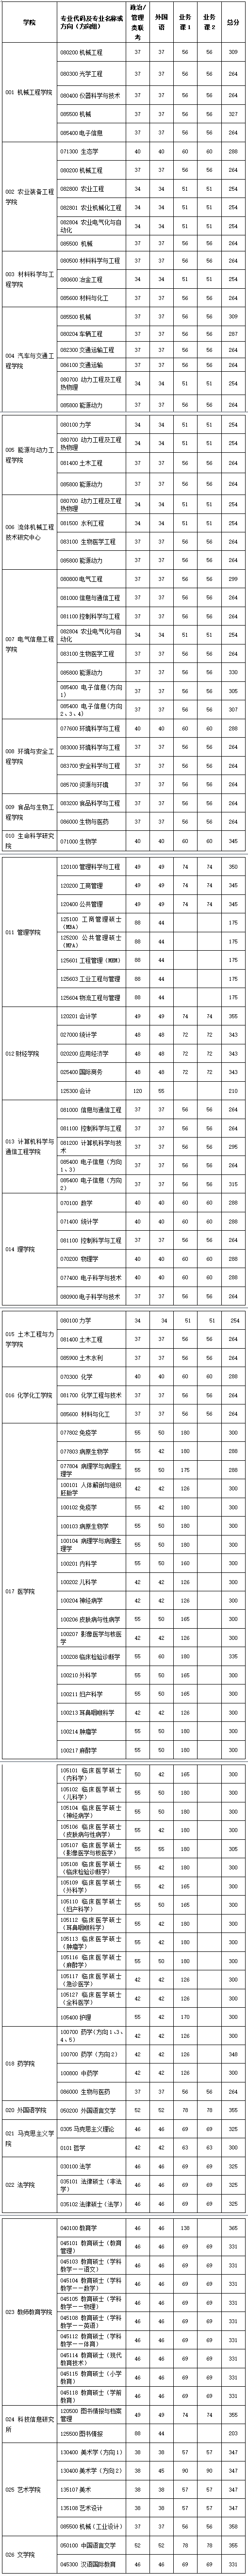 江苏大学2020年硕士研究生复试分数线.png